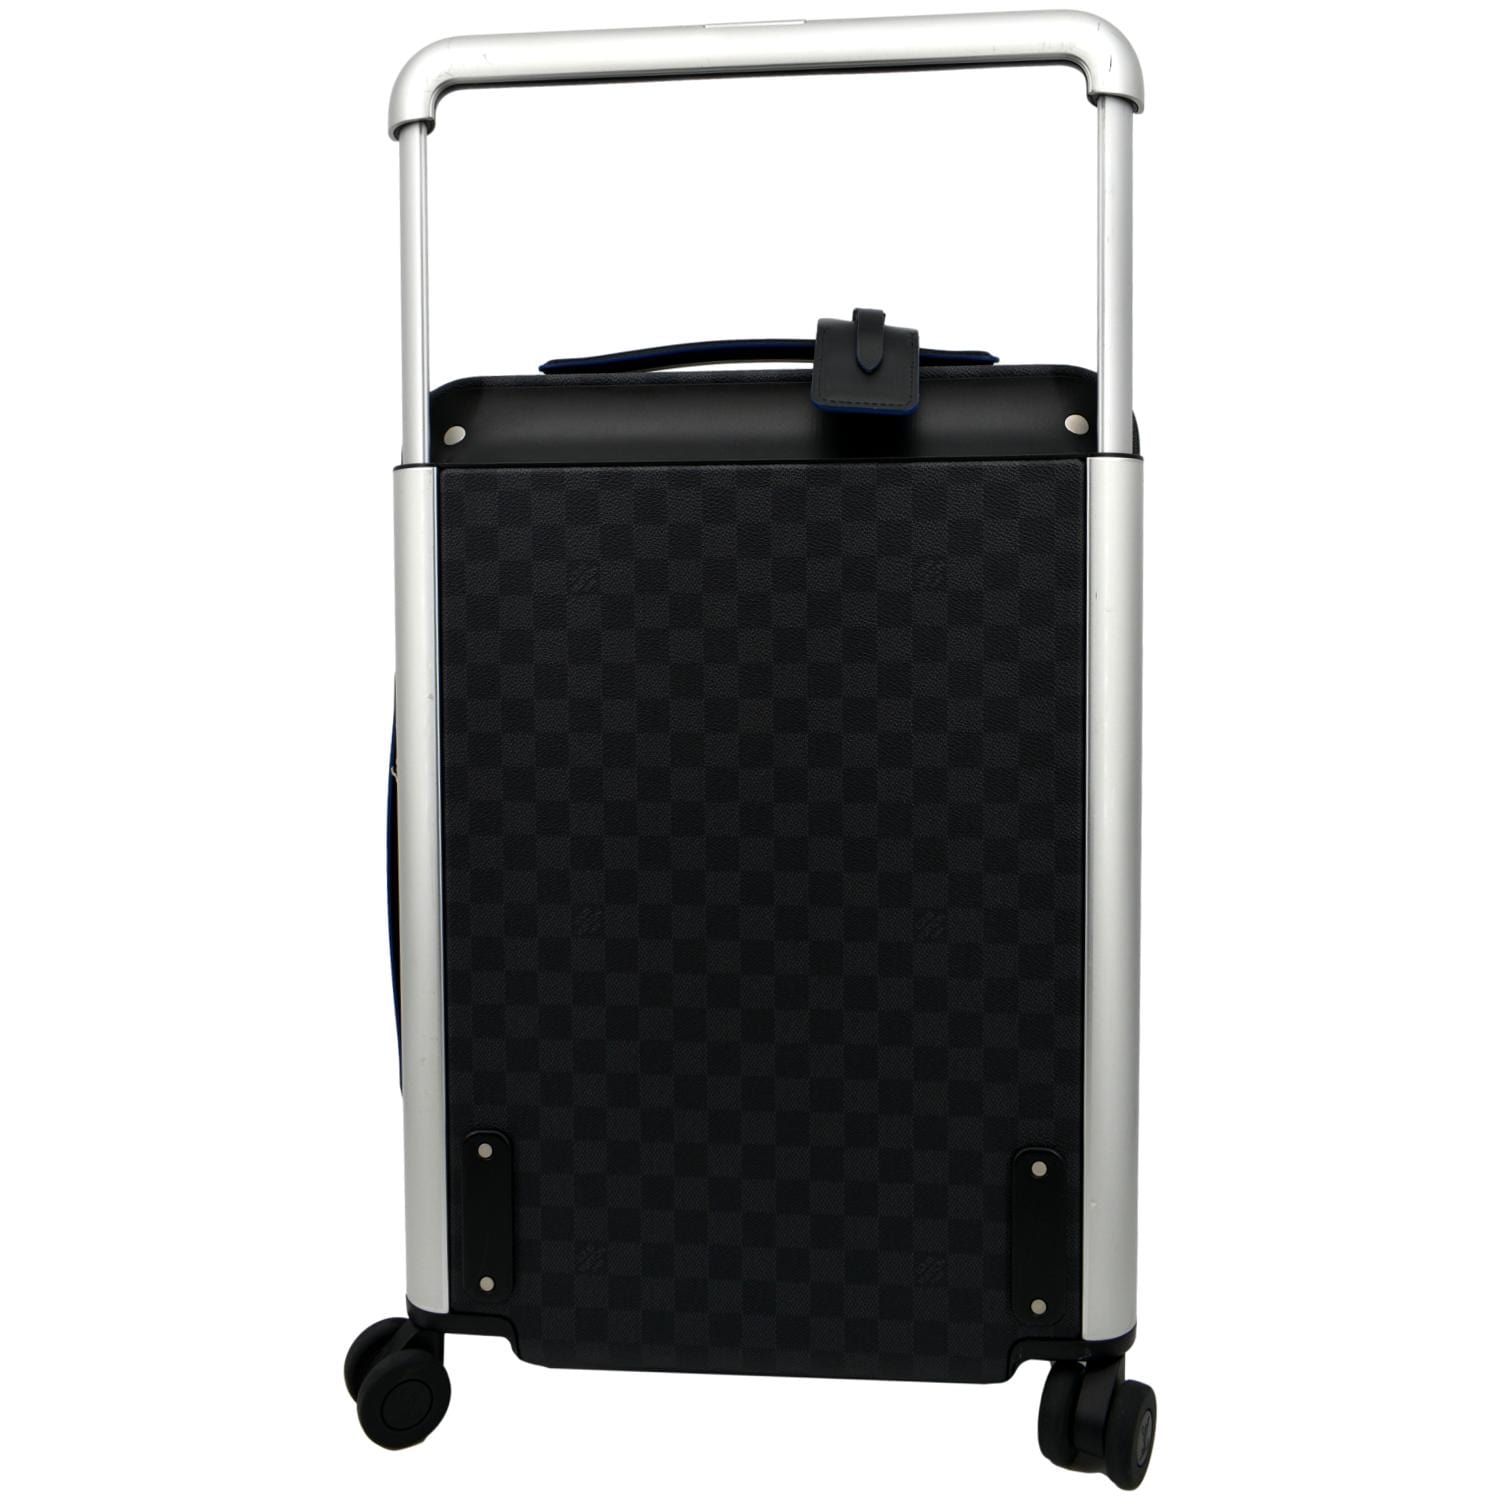 Louis Vuitton Rolling Luggage Horizon 55